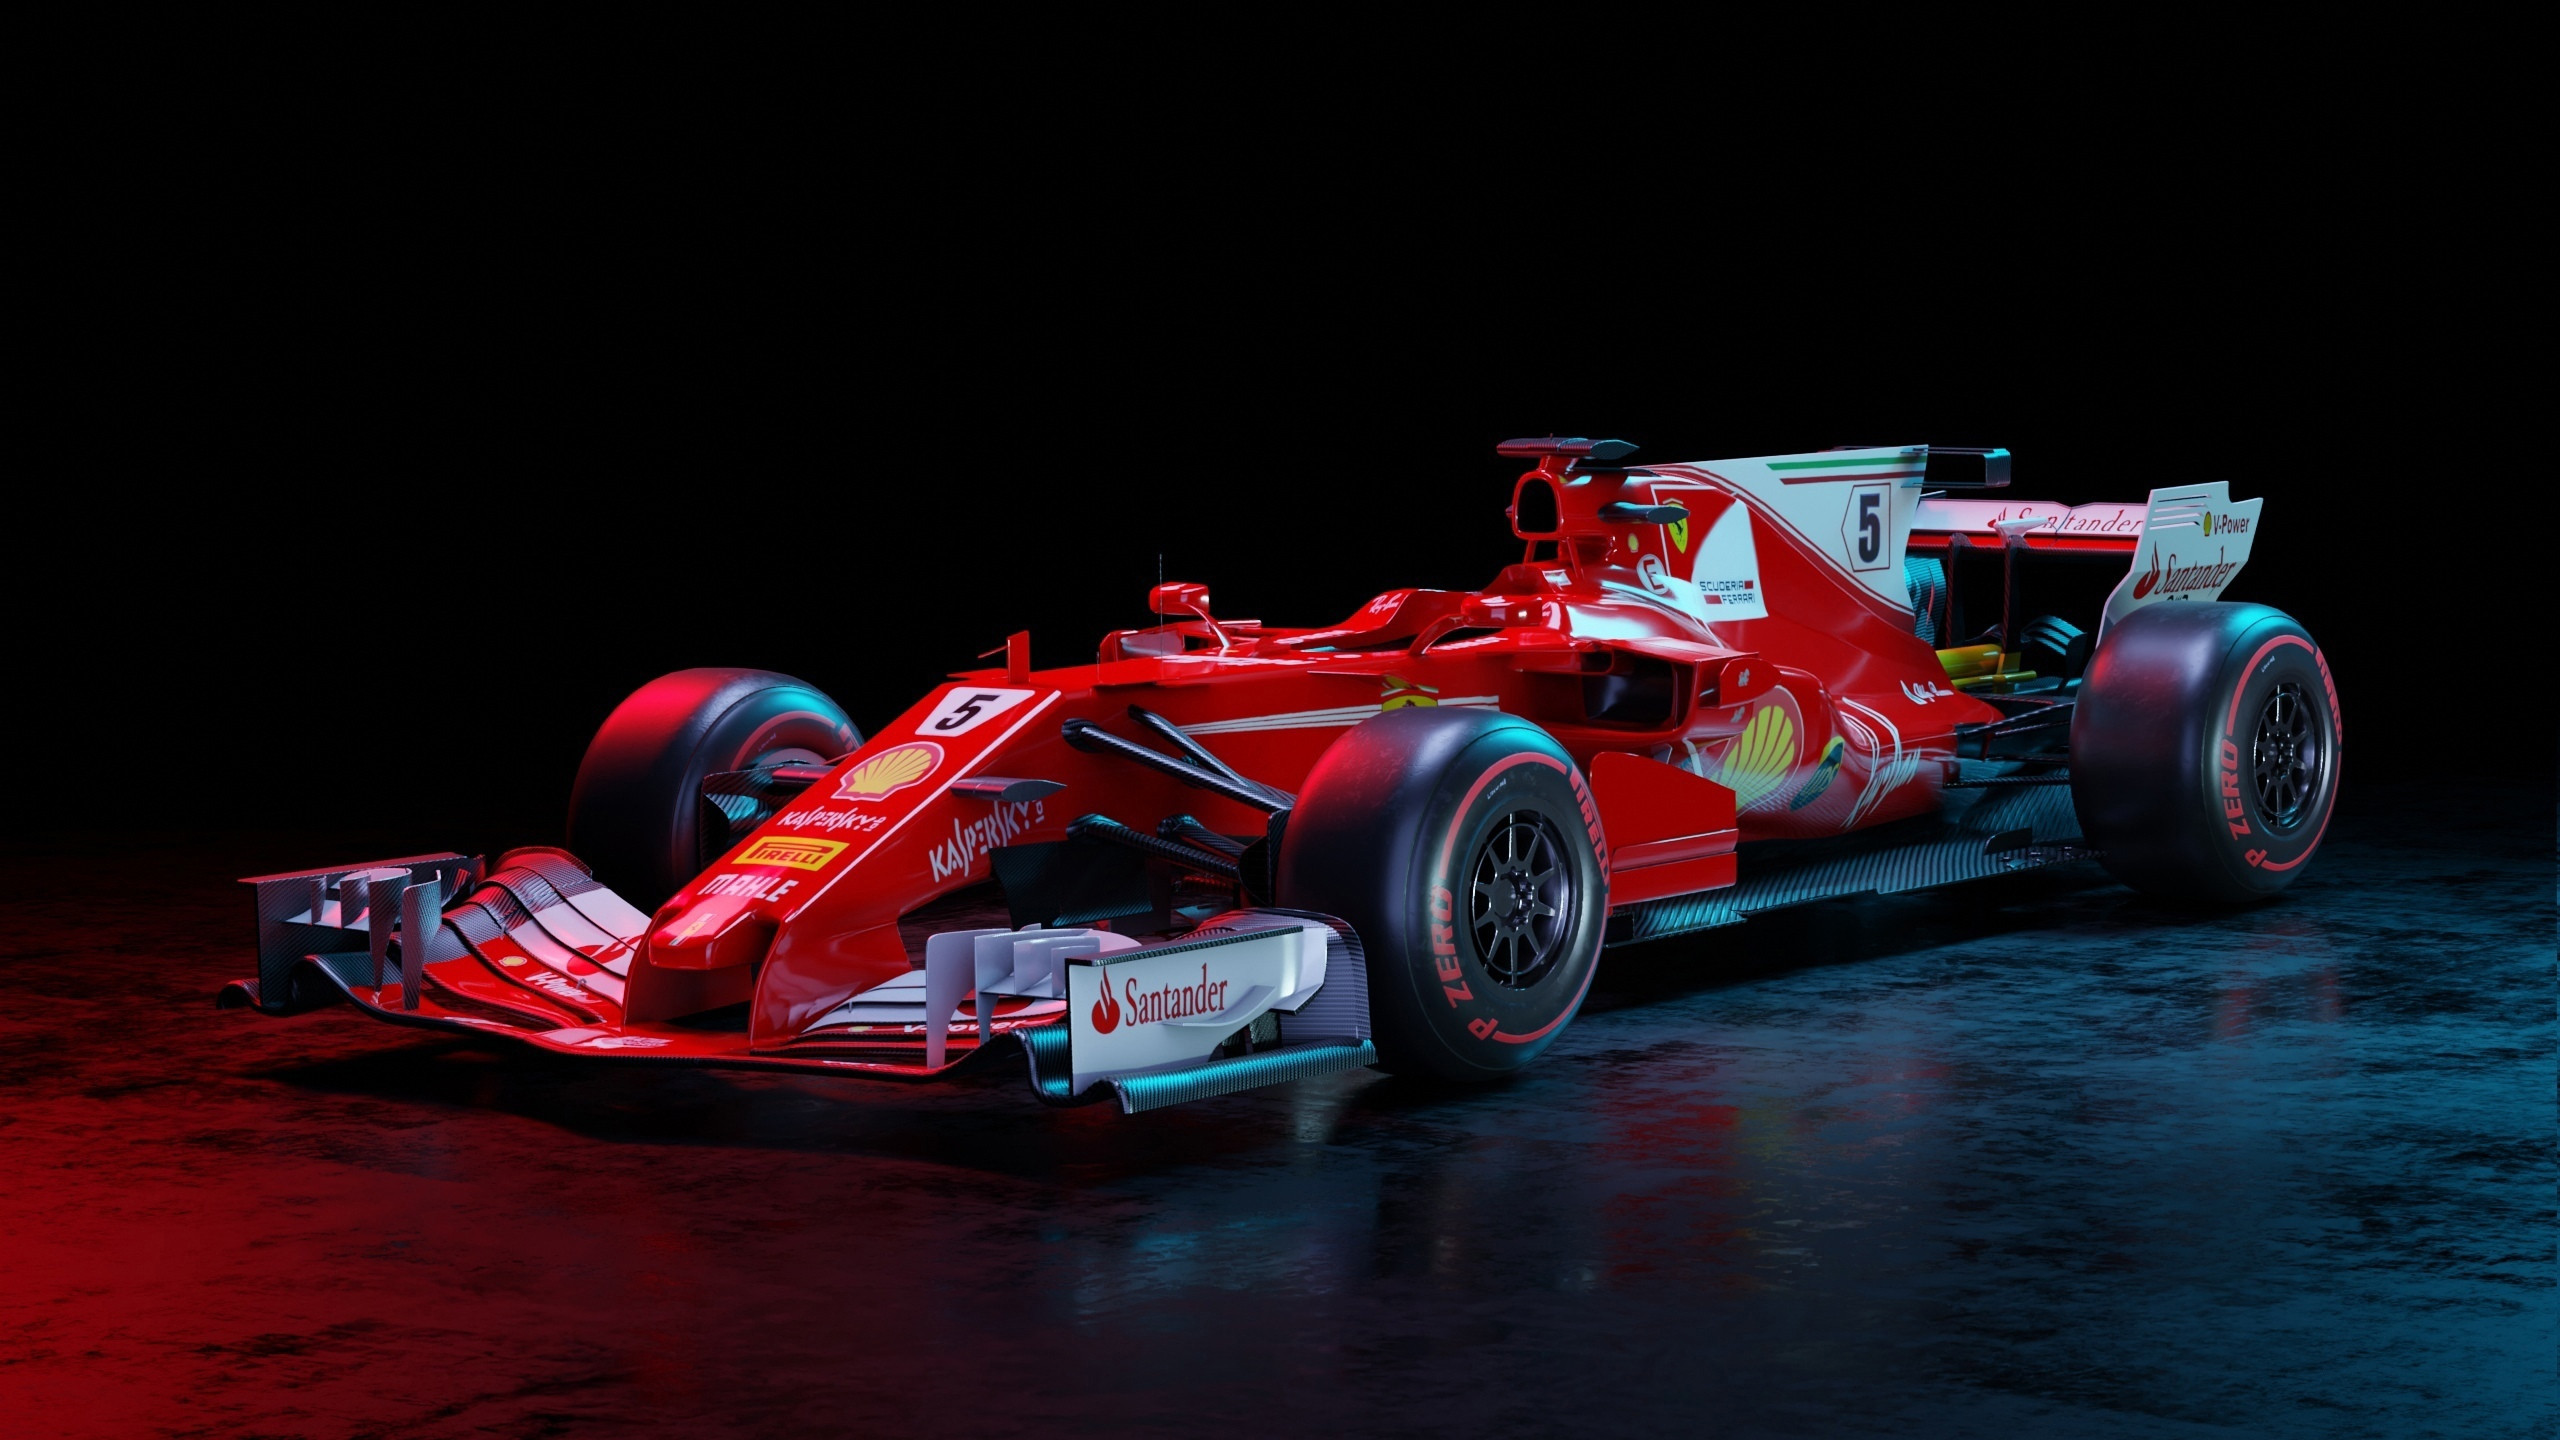 General 2560x1440 Formula 1 red cars CGI racing car race cars ArtStation Sebastian Vettel Ferrari